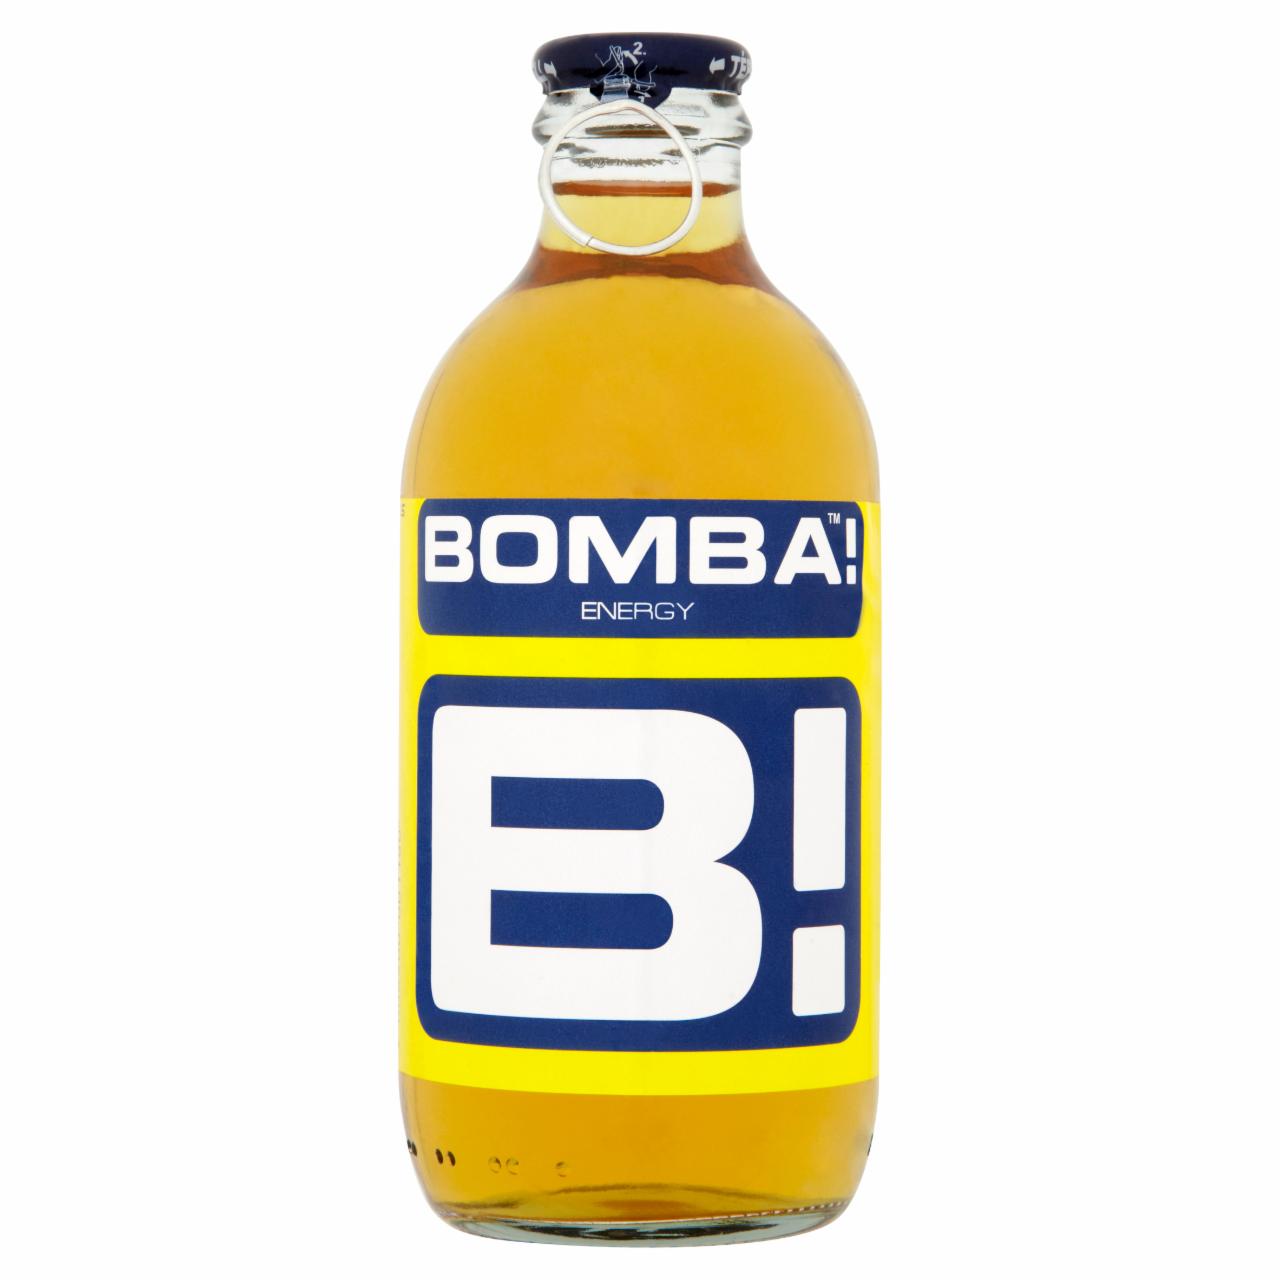 Képek - BOMBA! magas koffeintartalmú, tuttifrutti-ízű szénsavas ital cukorral és édesítőszerrel 250 ml